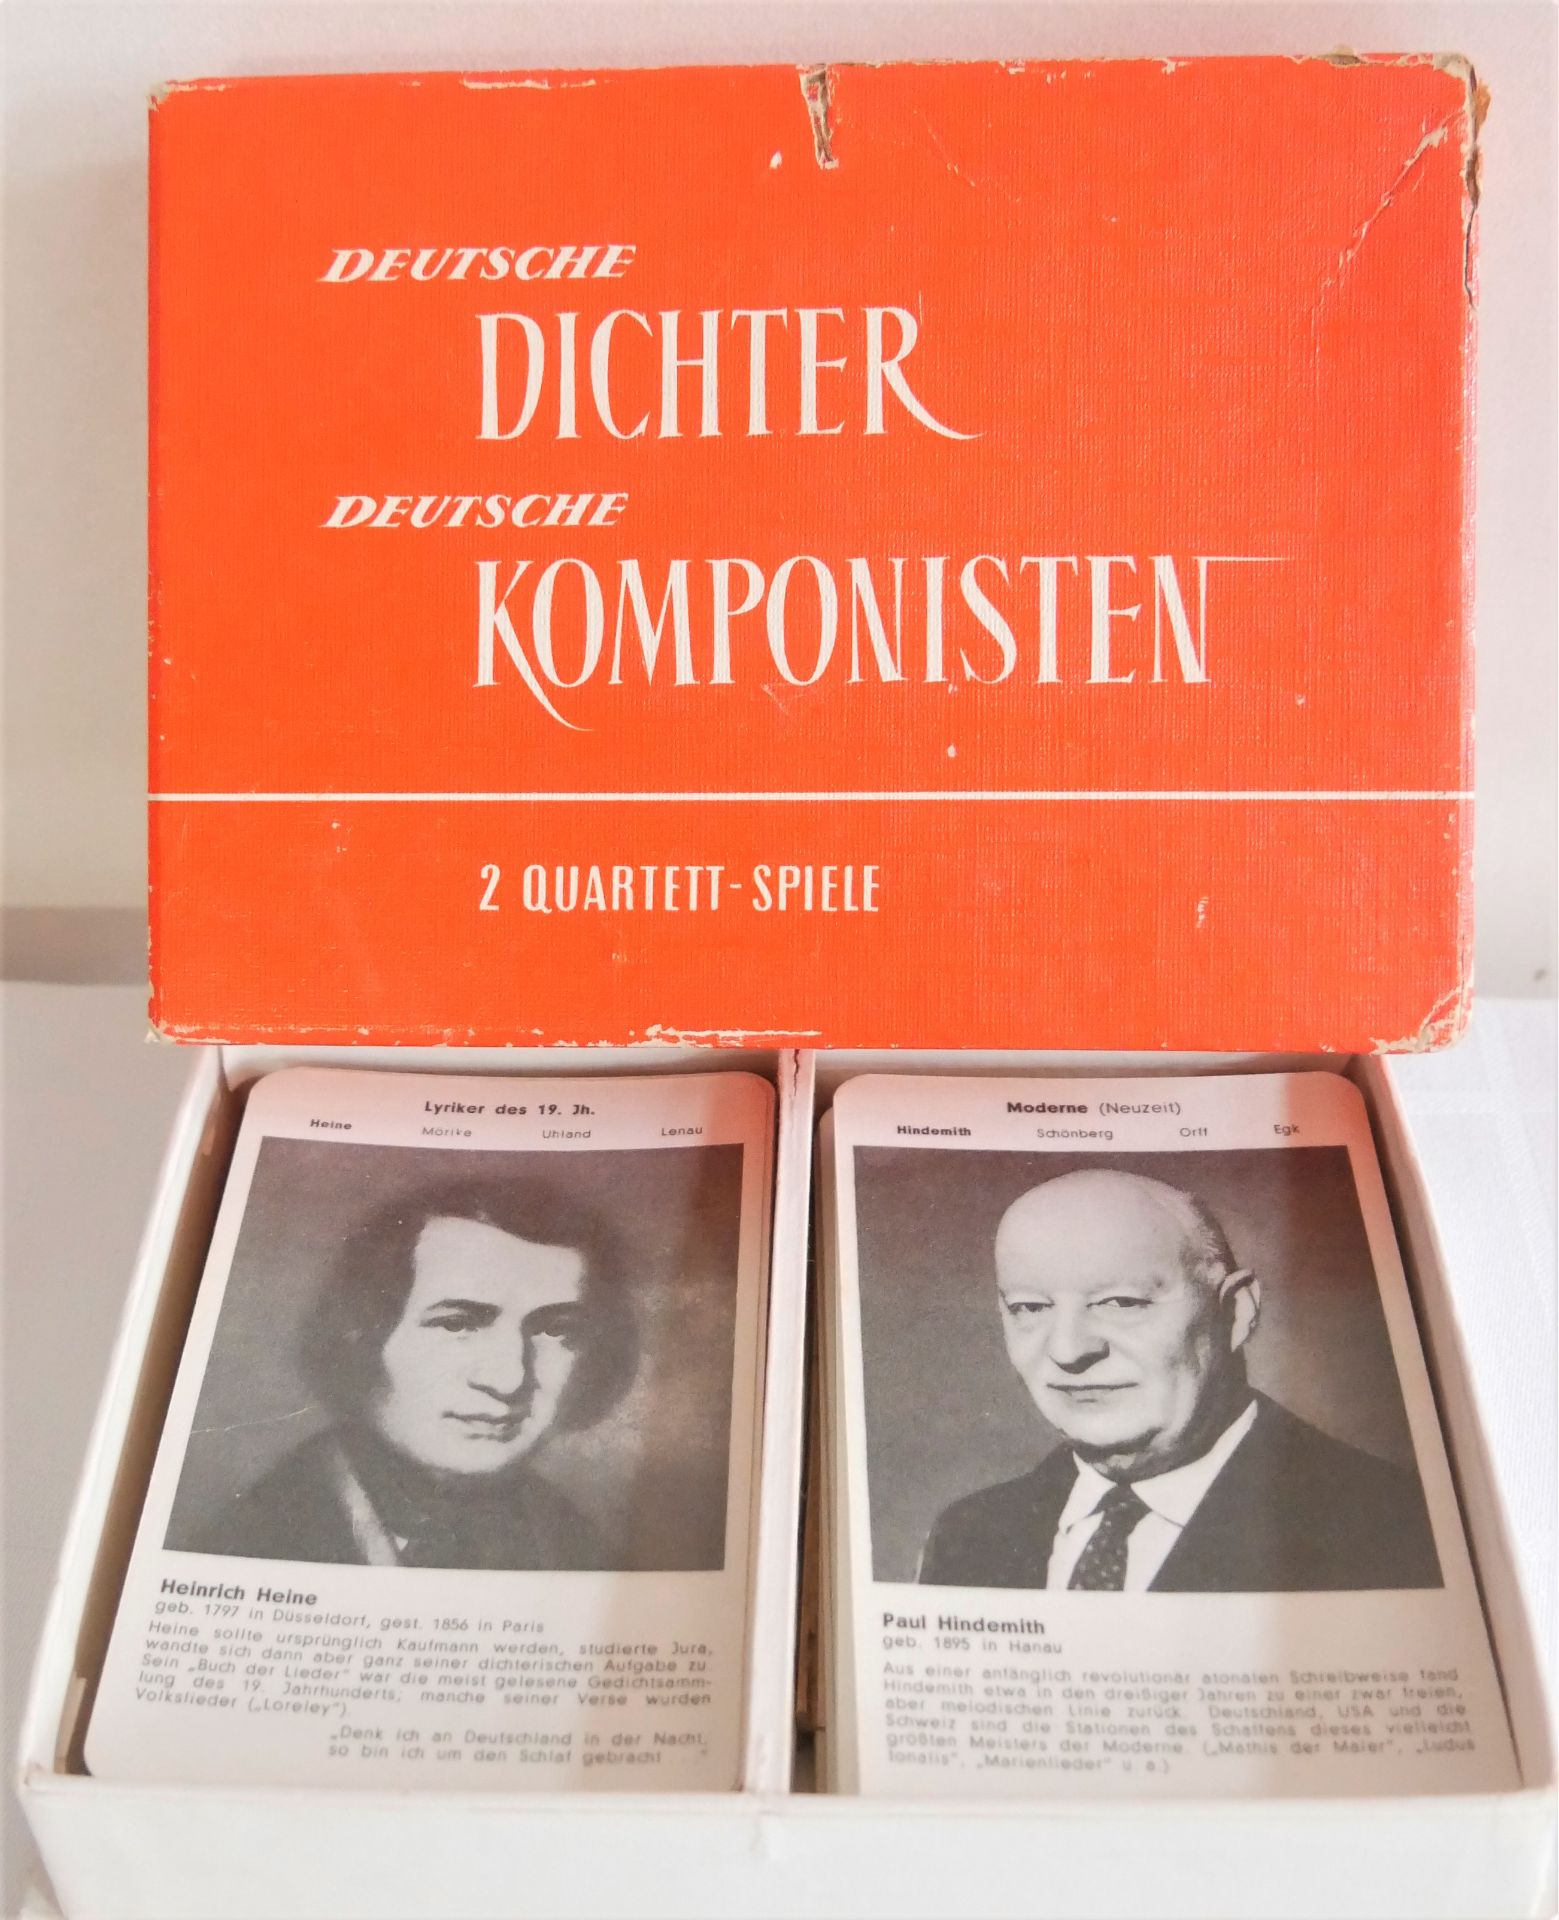 DEUTSCHE DICHTER - DEUTSCHE KOMPONISTEN, 2 Quartett Spiele, 72 Karten komplett. Bertelsmann Verlag /